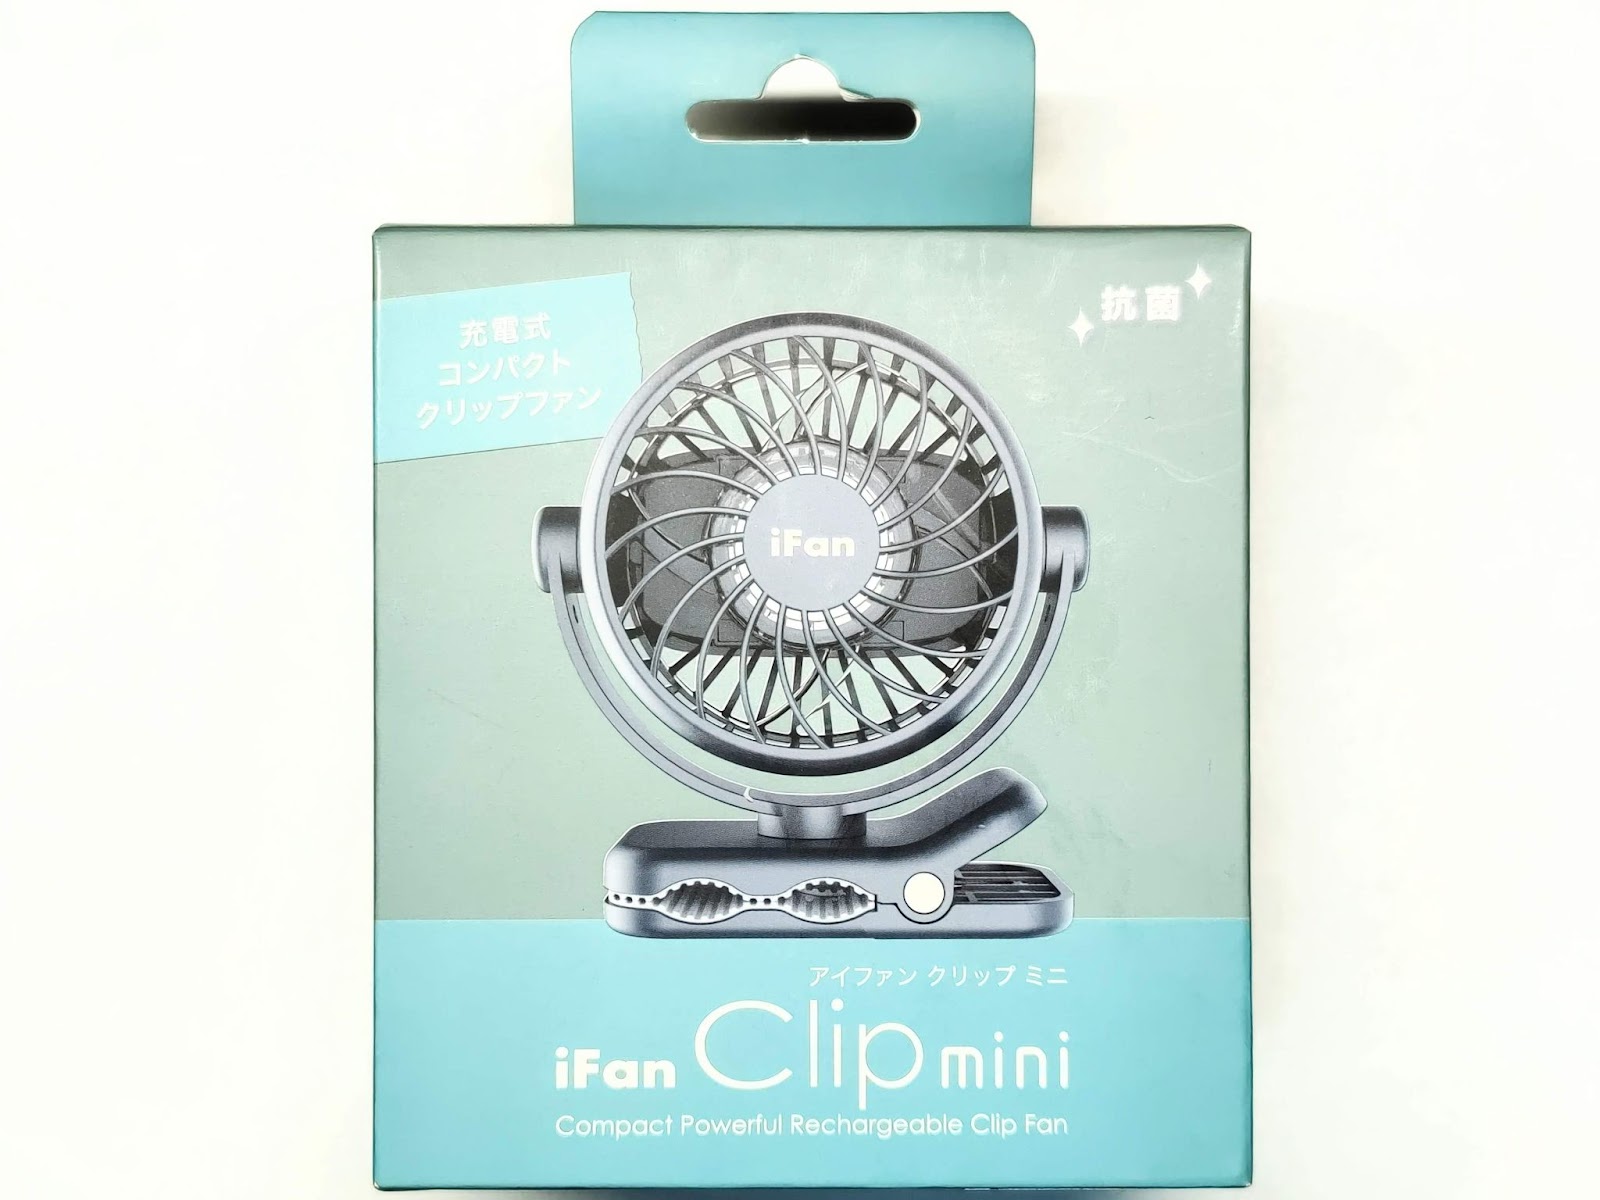 iFan Clip mini 外箱